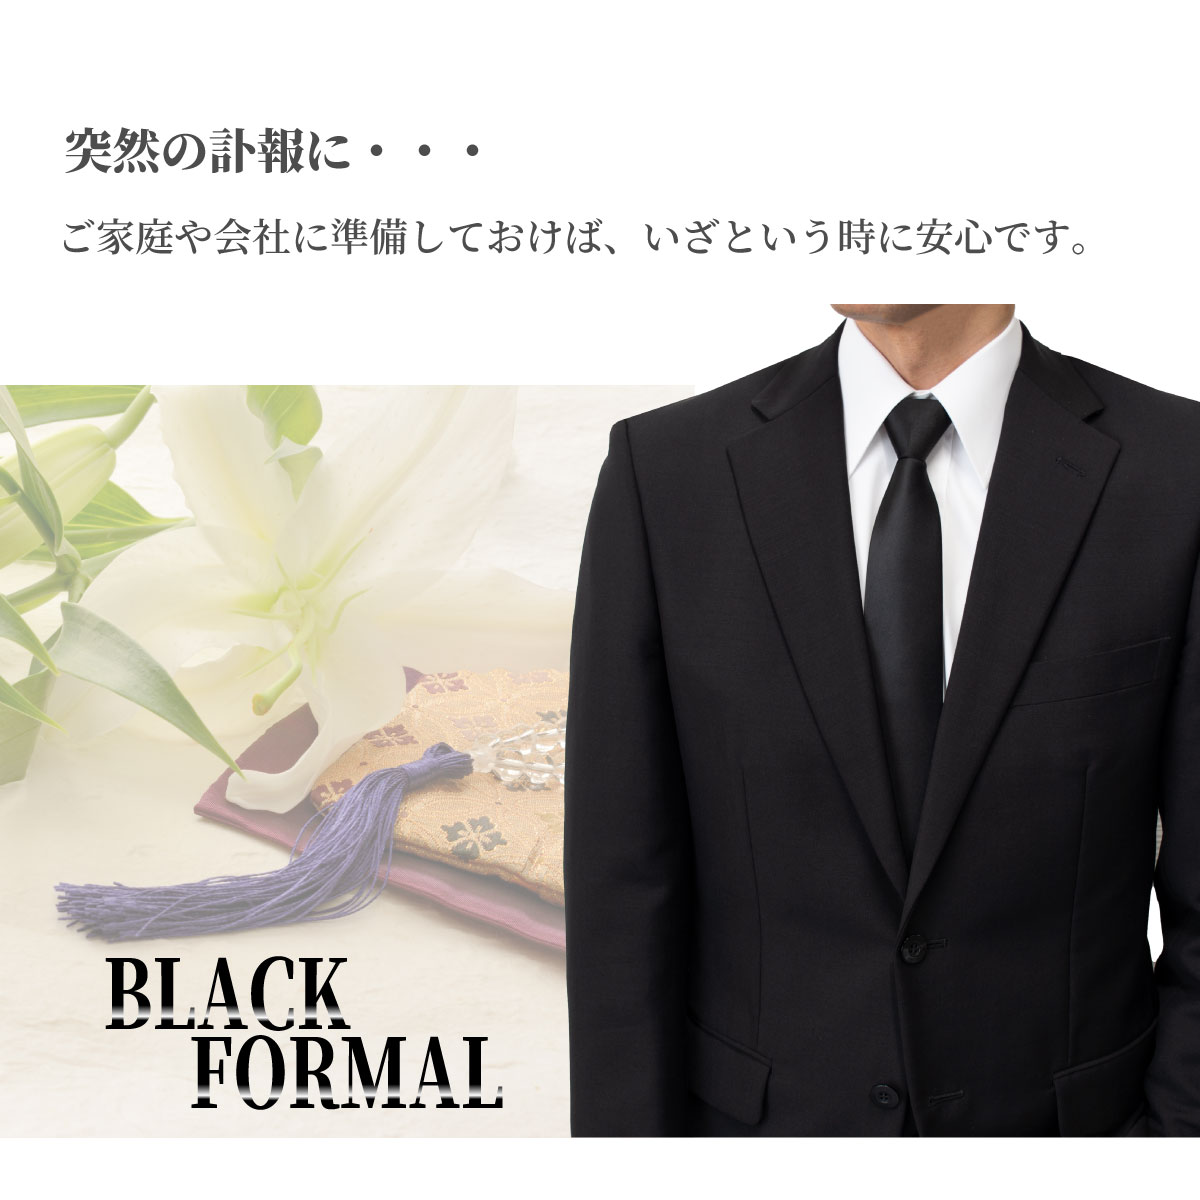  галстук чёрный сделано в Японии чёрный галстук . одежда . оборудование . тип закон необходимо . через ночь .. поминальная служба . другой тип праздничные обряды O-Bon ... четки формальный одноцветный бесплатная доставка r100